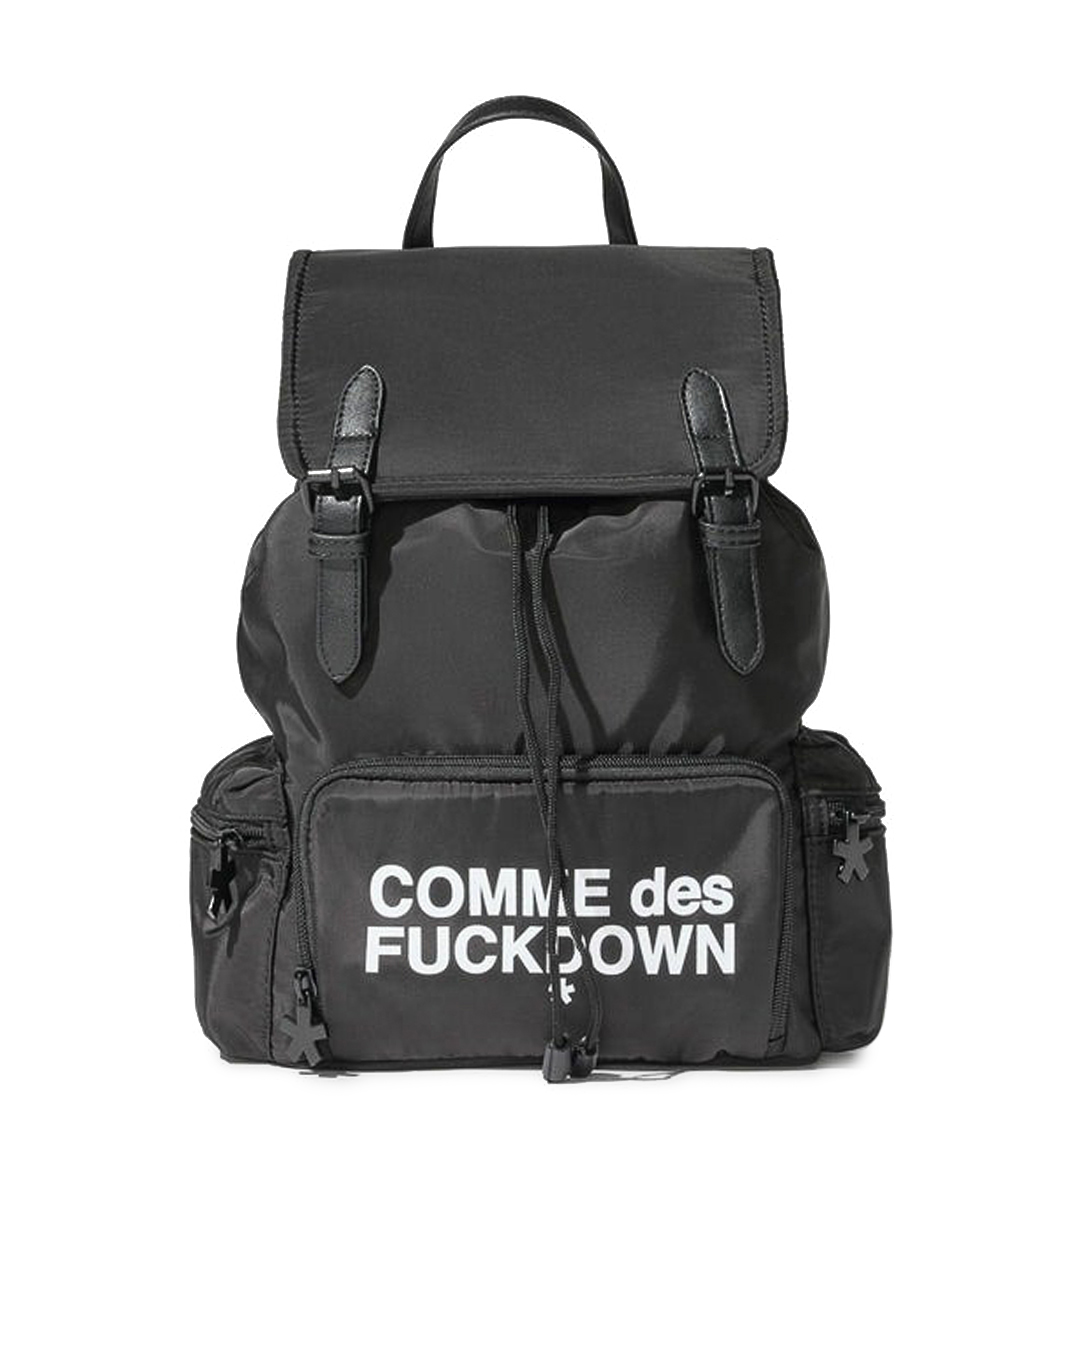 рюкзак COMME des FUCKDOWN рюкзак с карманом 22 см х 10 см х 30 см кошечка мари коты аристократы